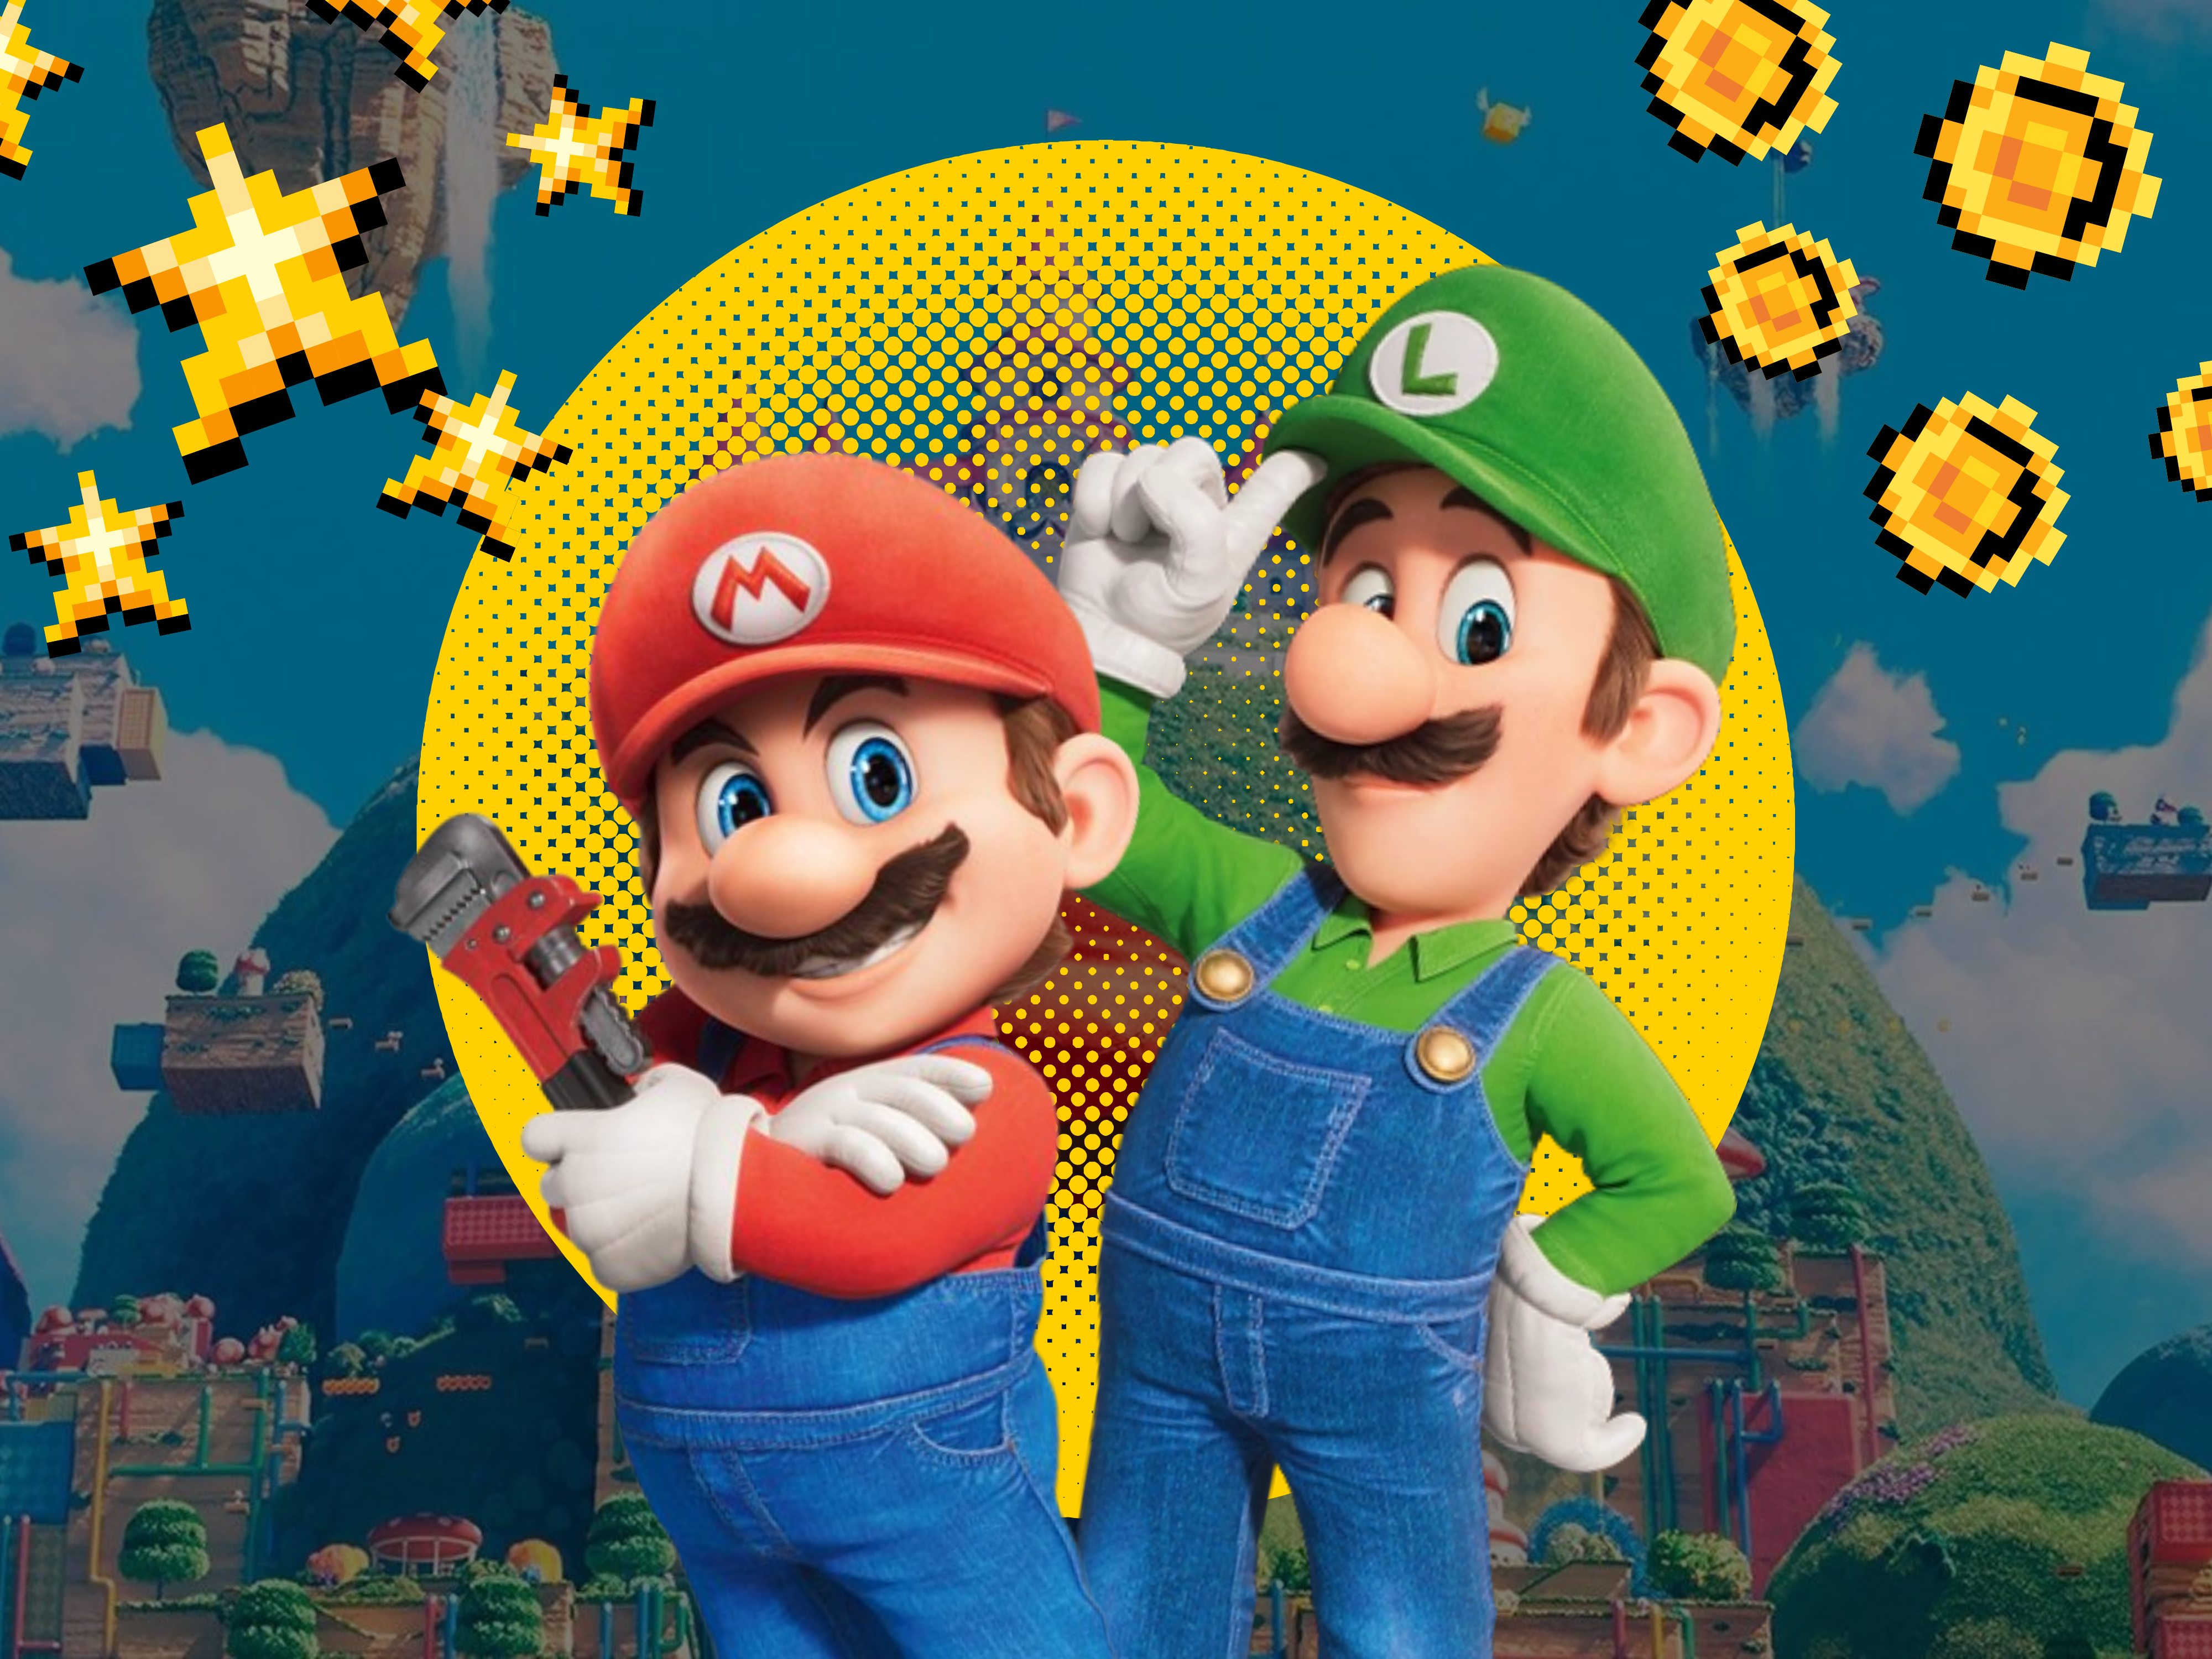 Lista reúne os dez melhores jogos com o Mario para portáteis